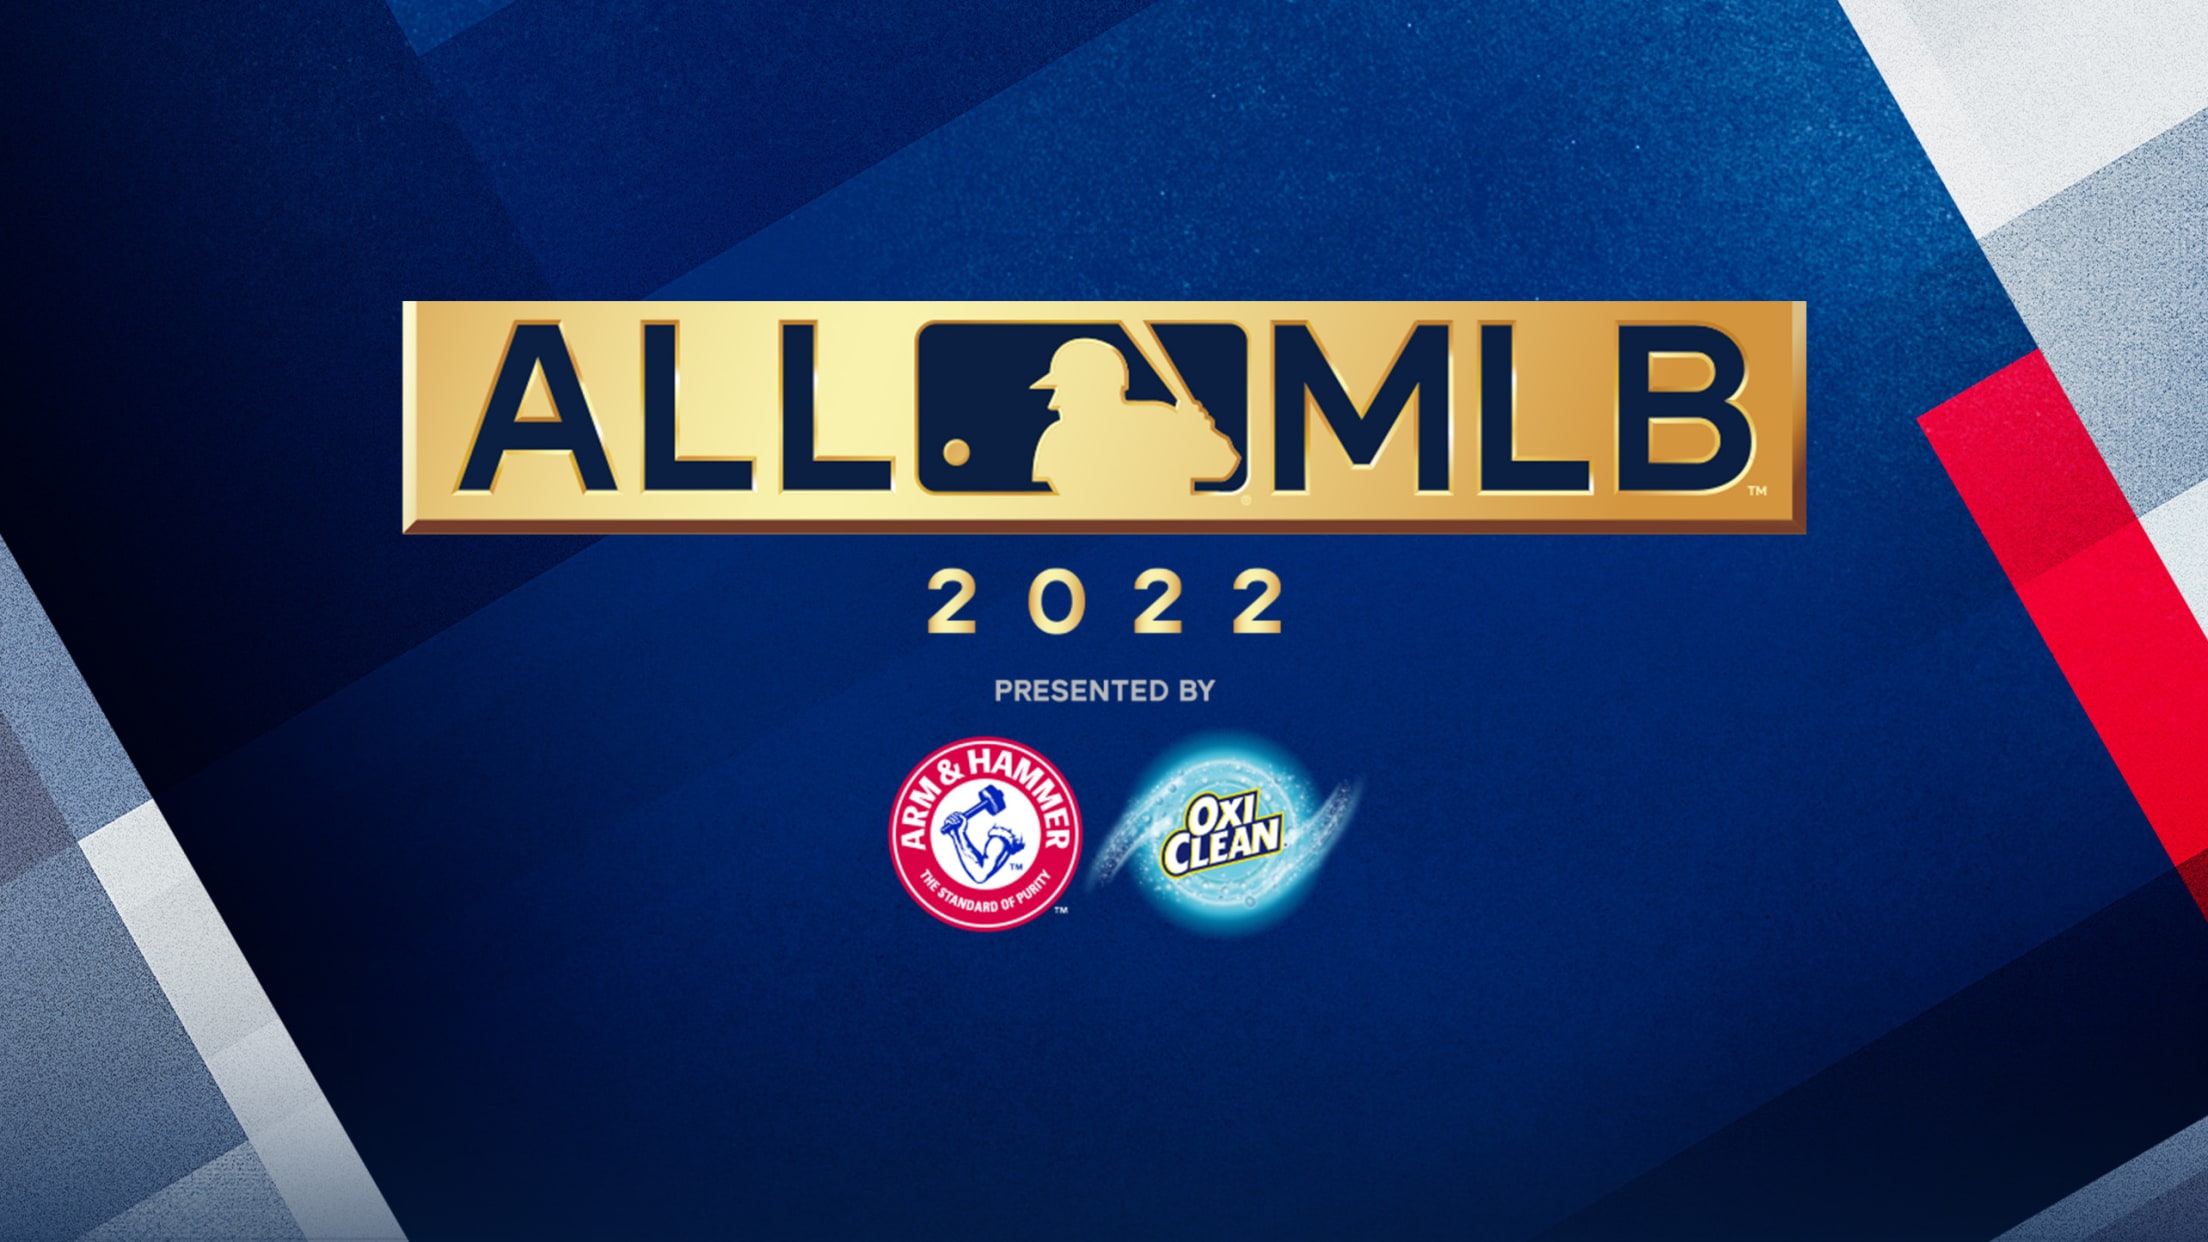 2020 All-MLB Team vote